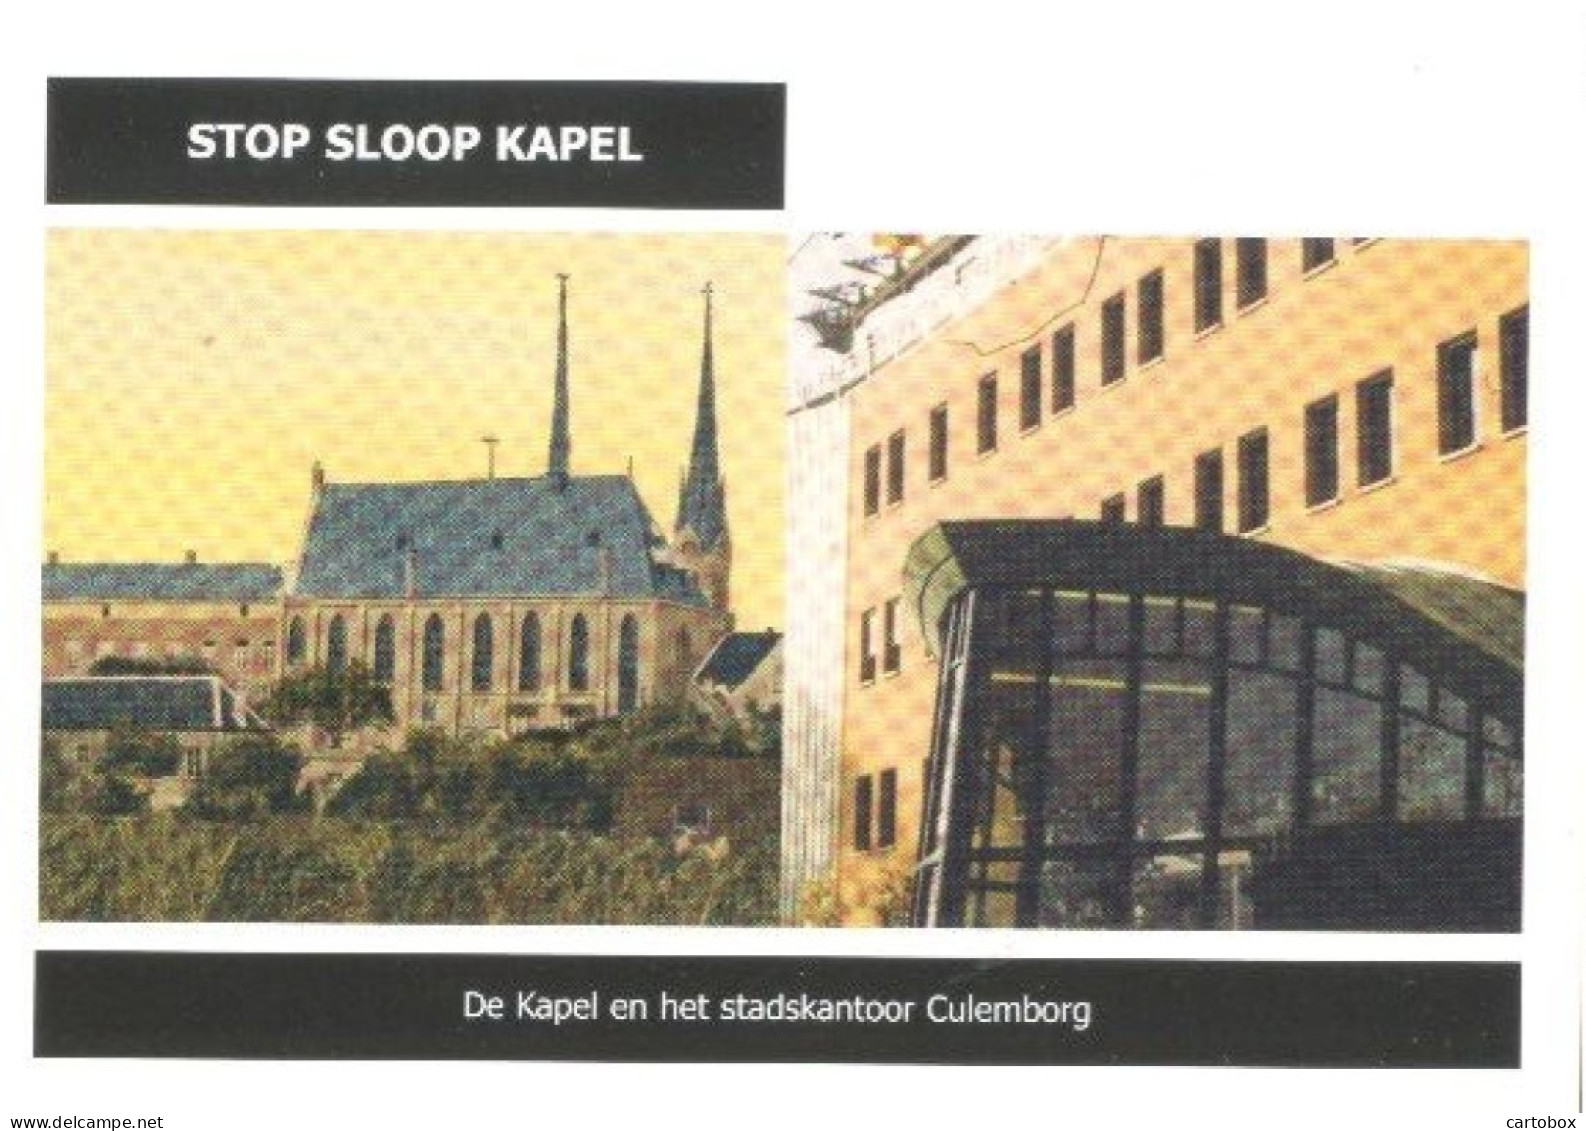 Culemborg, Stop Sloop Kapel (Een Raster Op De Kaart Is Veroorzaakt Door Het Scannen; De Afbeelding Is Helder) - Culemborg